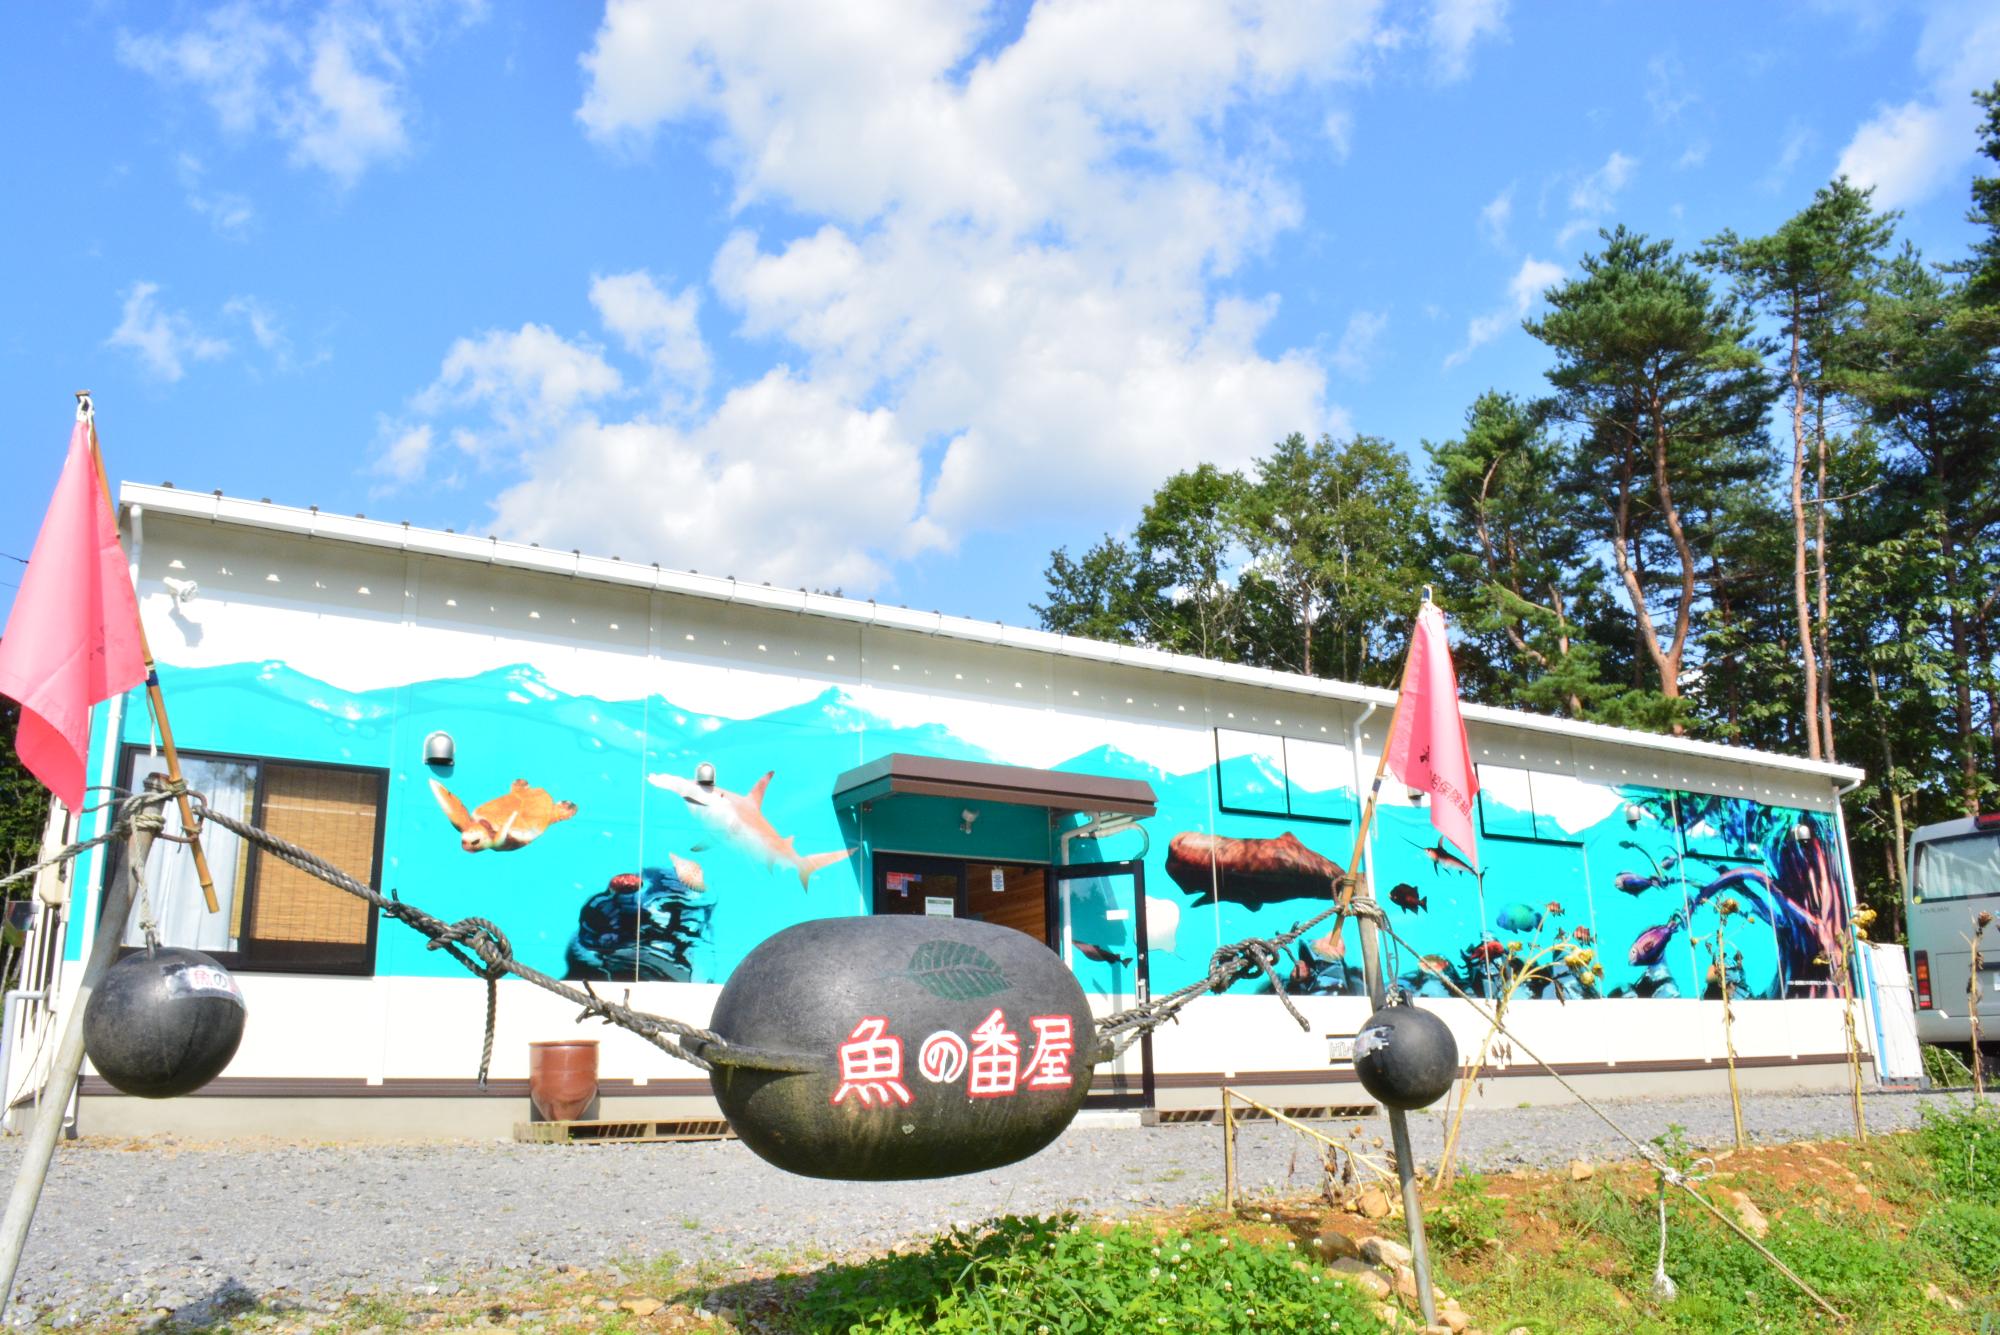 魚の番屋と書かれたブイの奥に見える美術館の建物の写真